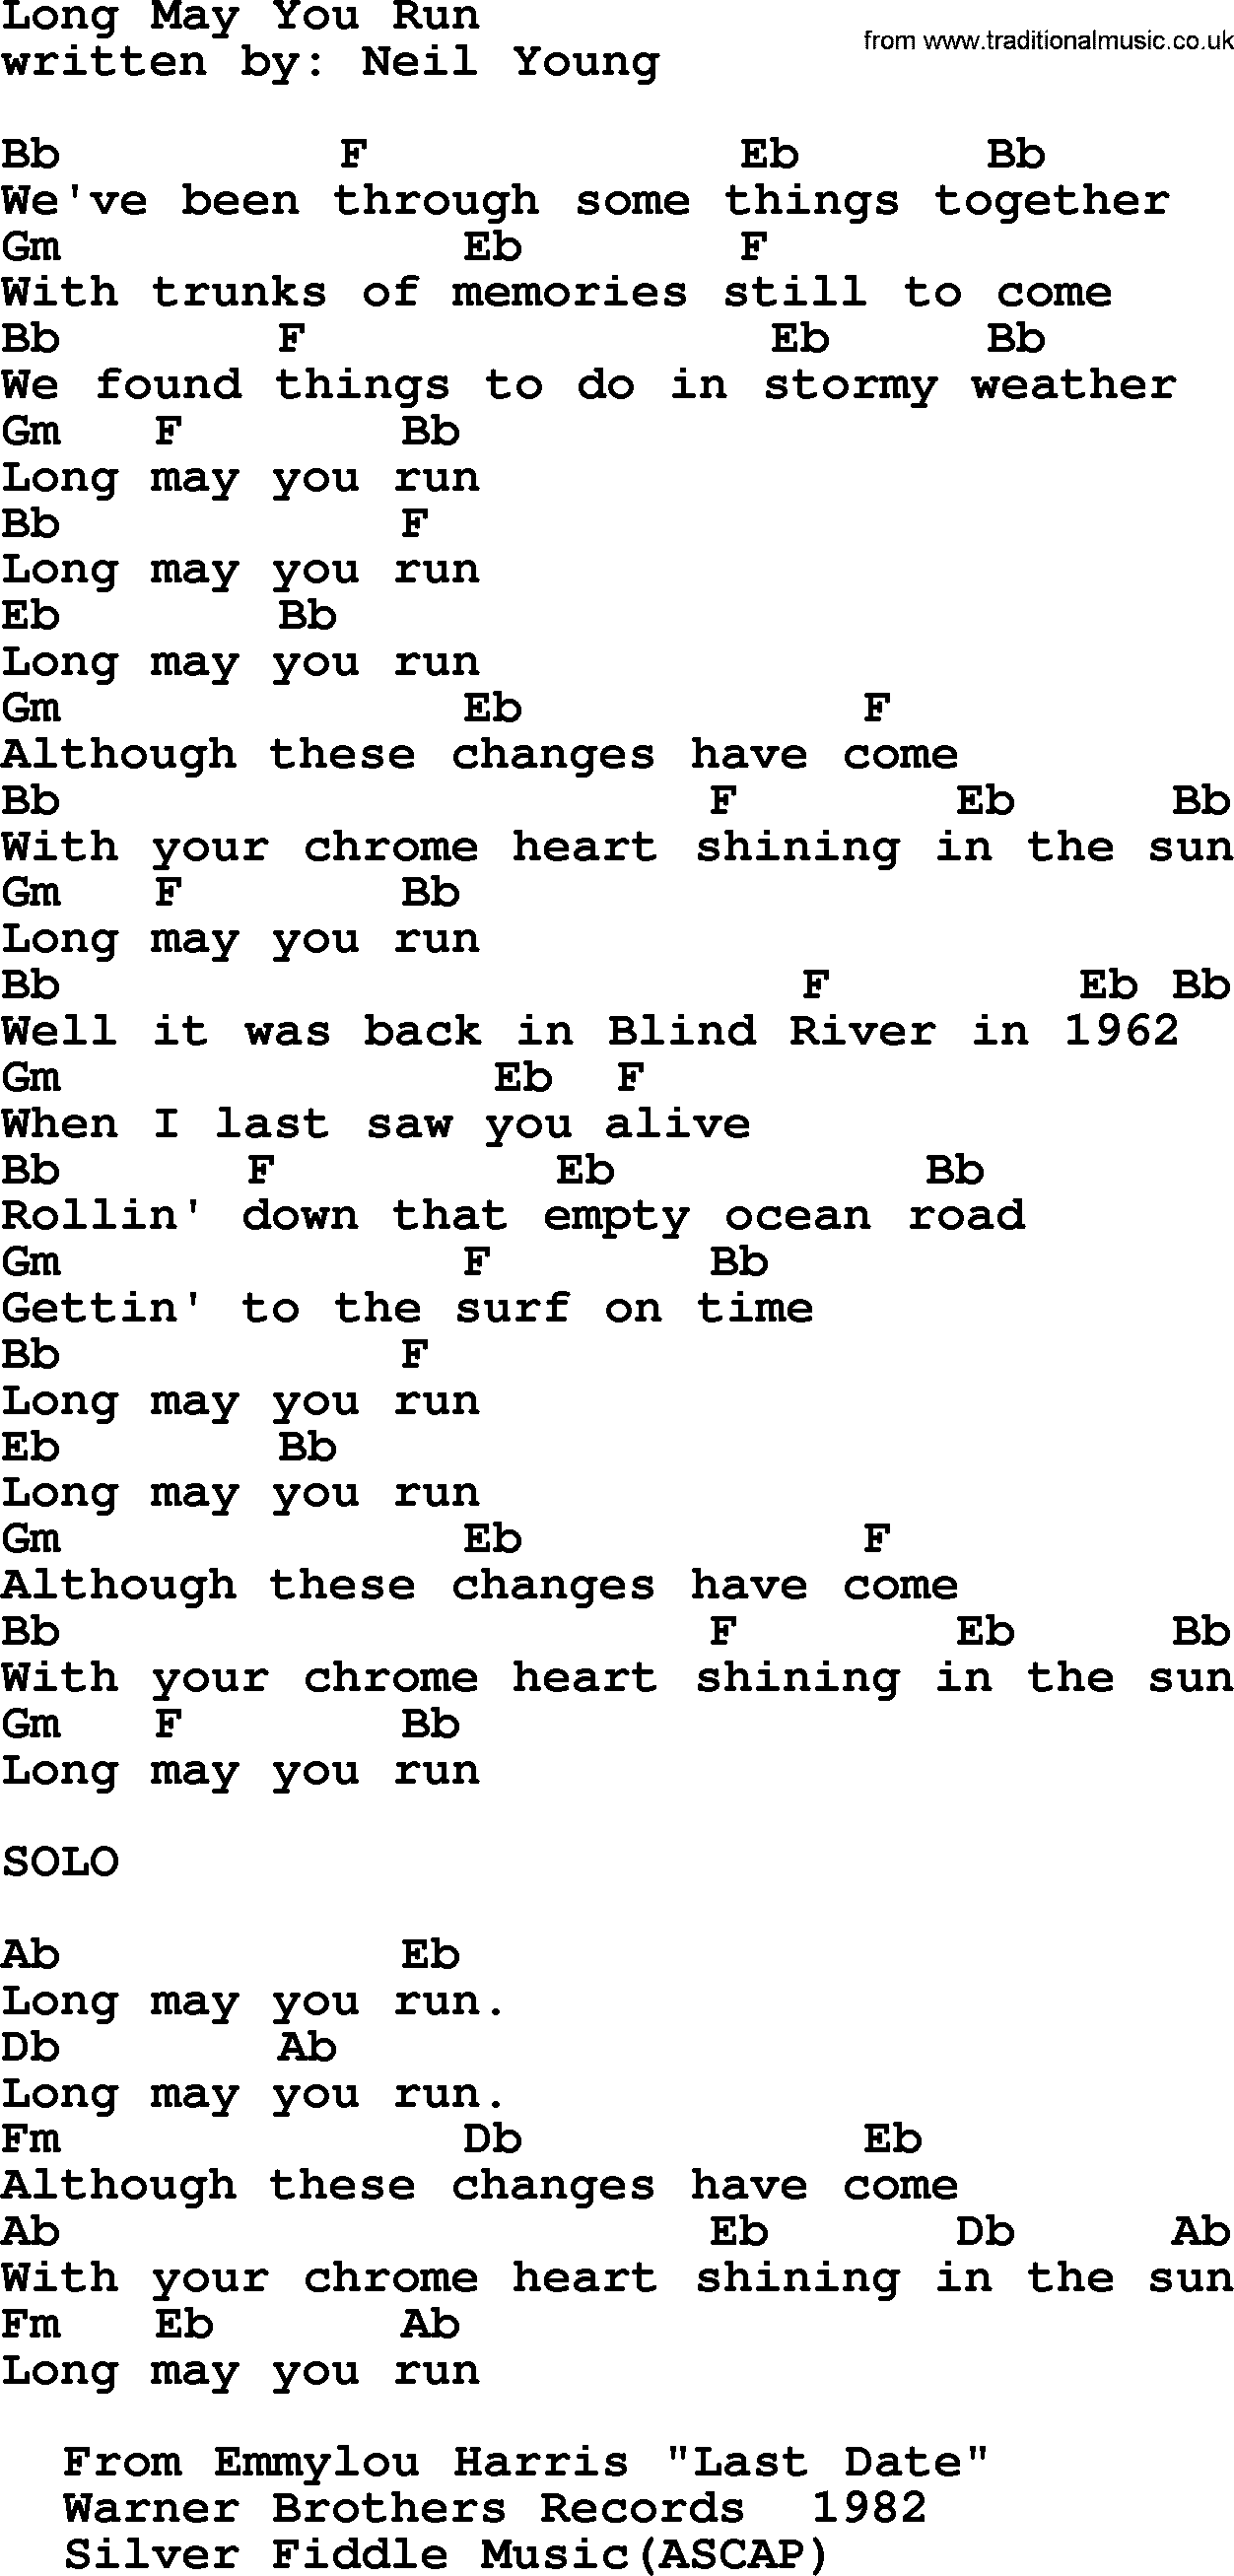 Emmylou Harris song: Long May You Run lyrics and chords